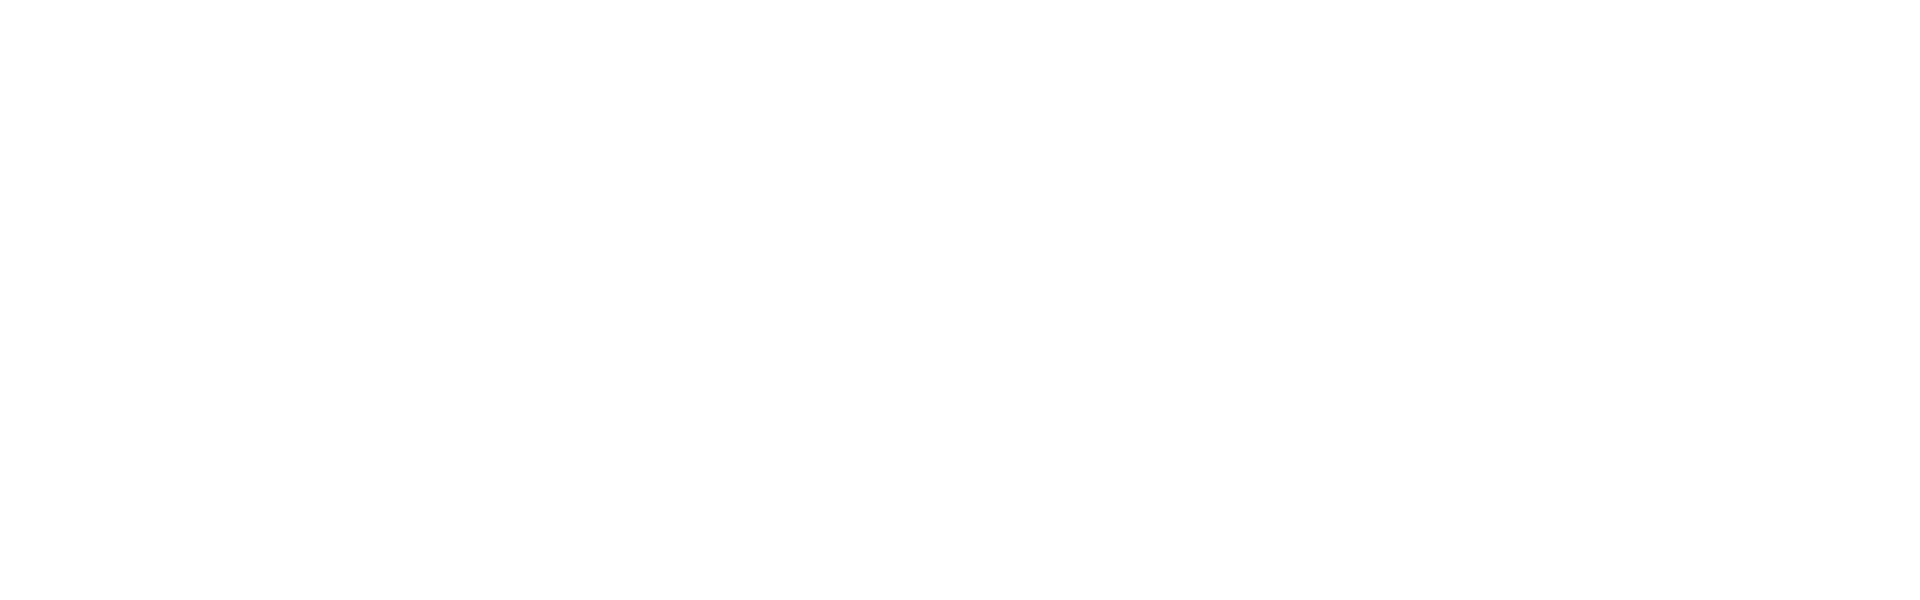 OhmCo carwash marketing logo